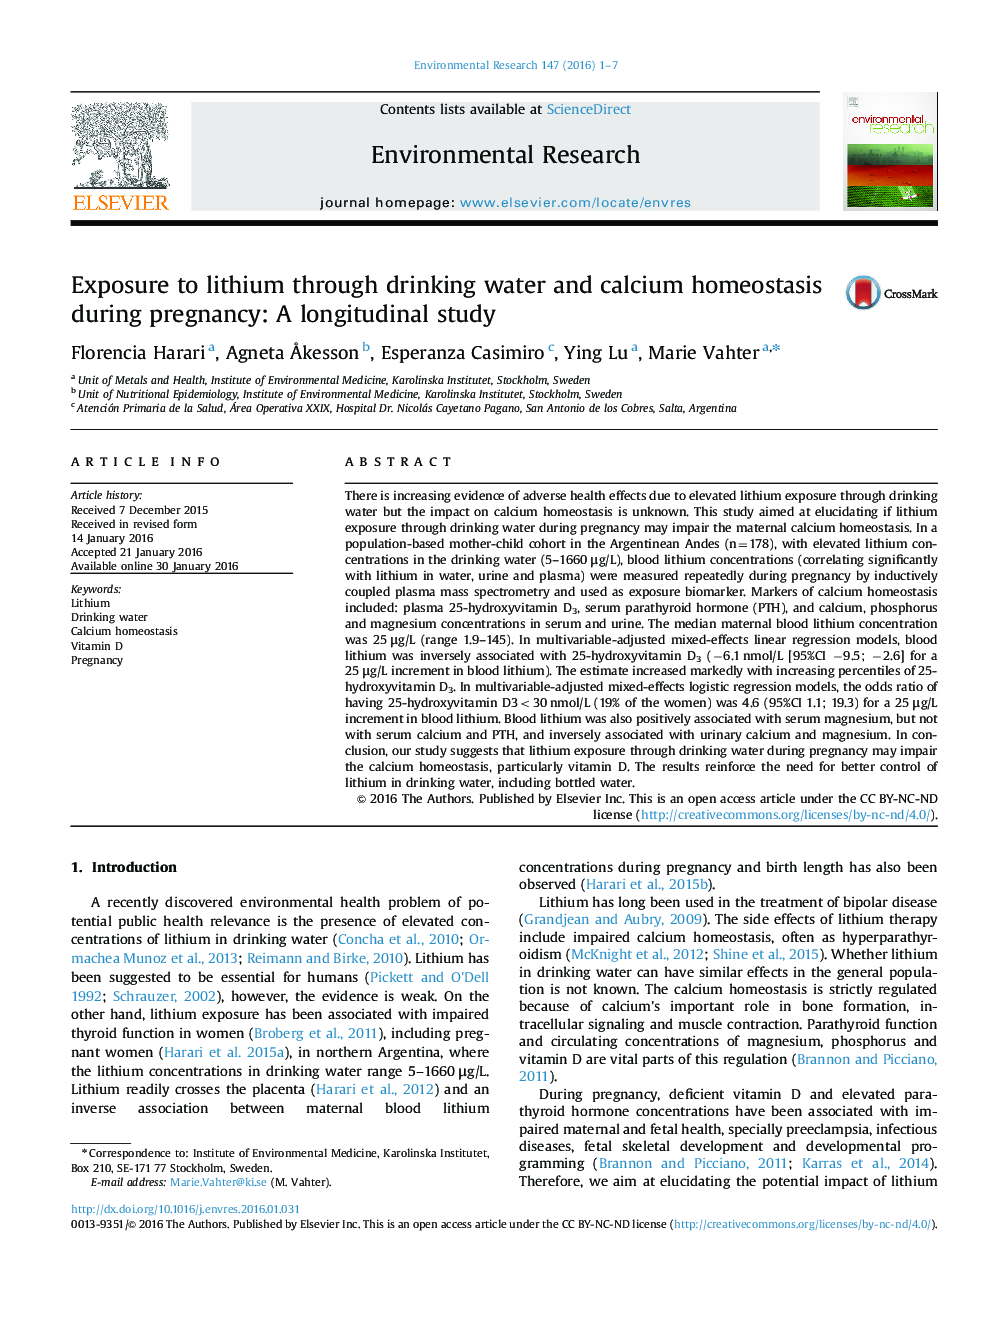 قرار گرفتن در معرض لیتیم از طریق آب آشامیدنی و هومیوستاز کلسیم در دوران بارداری: یک مطالعه طولی 